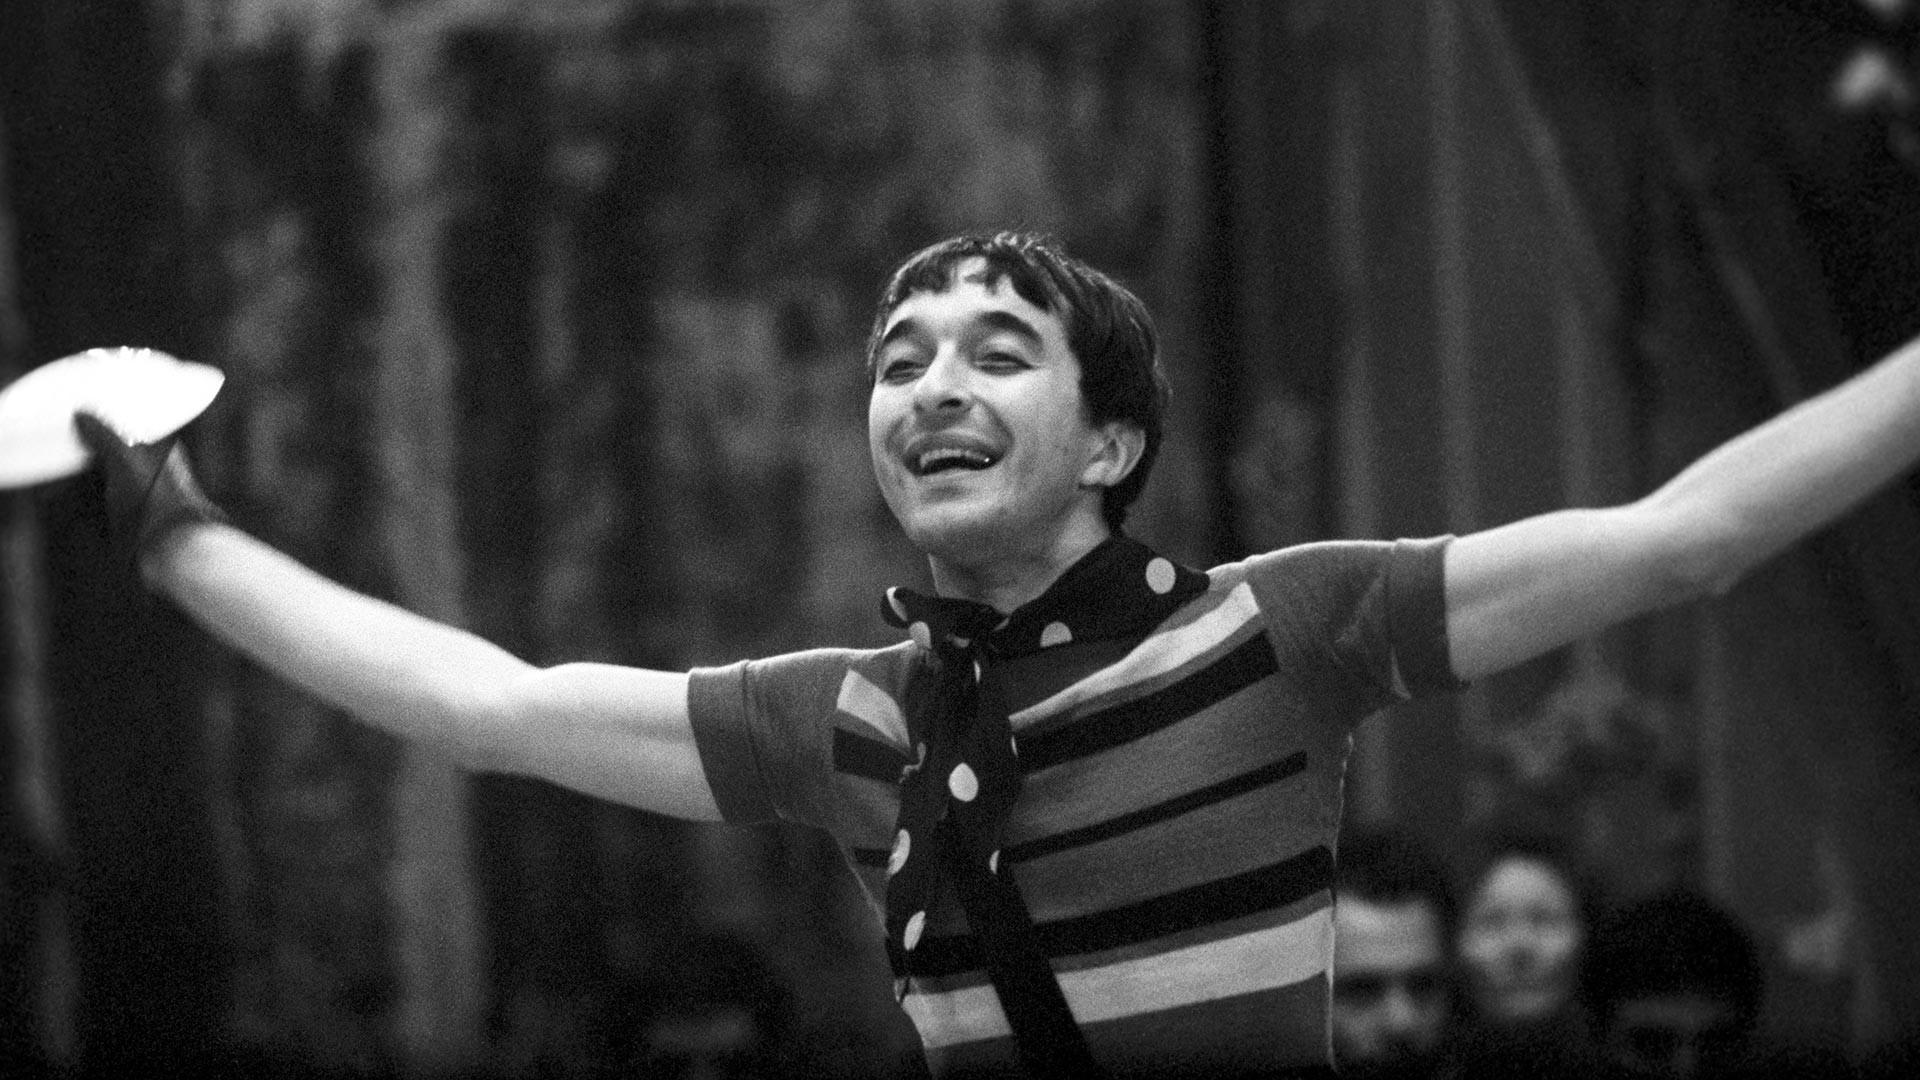 Nel 1964 vinse il primo premio al Concorso Europeo di Clown a Praga